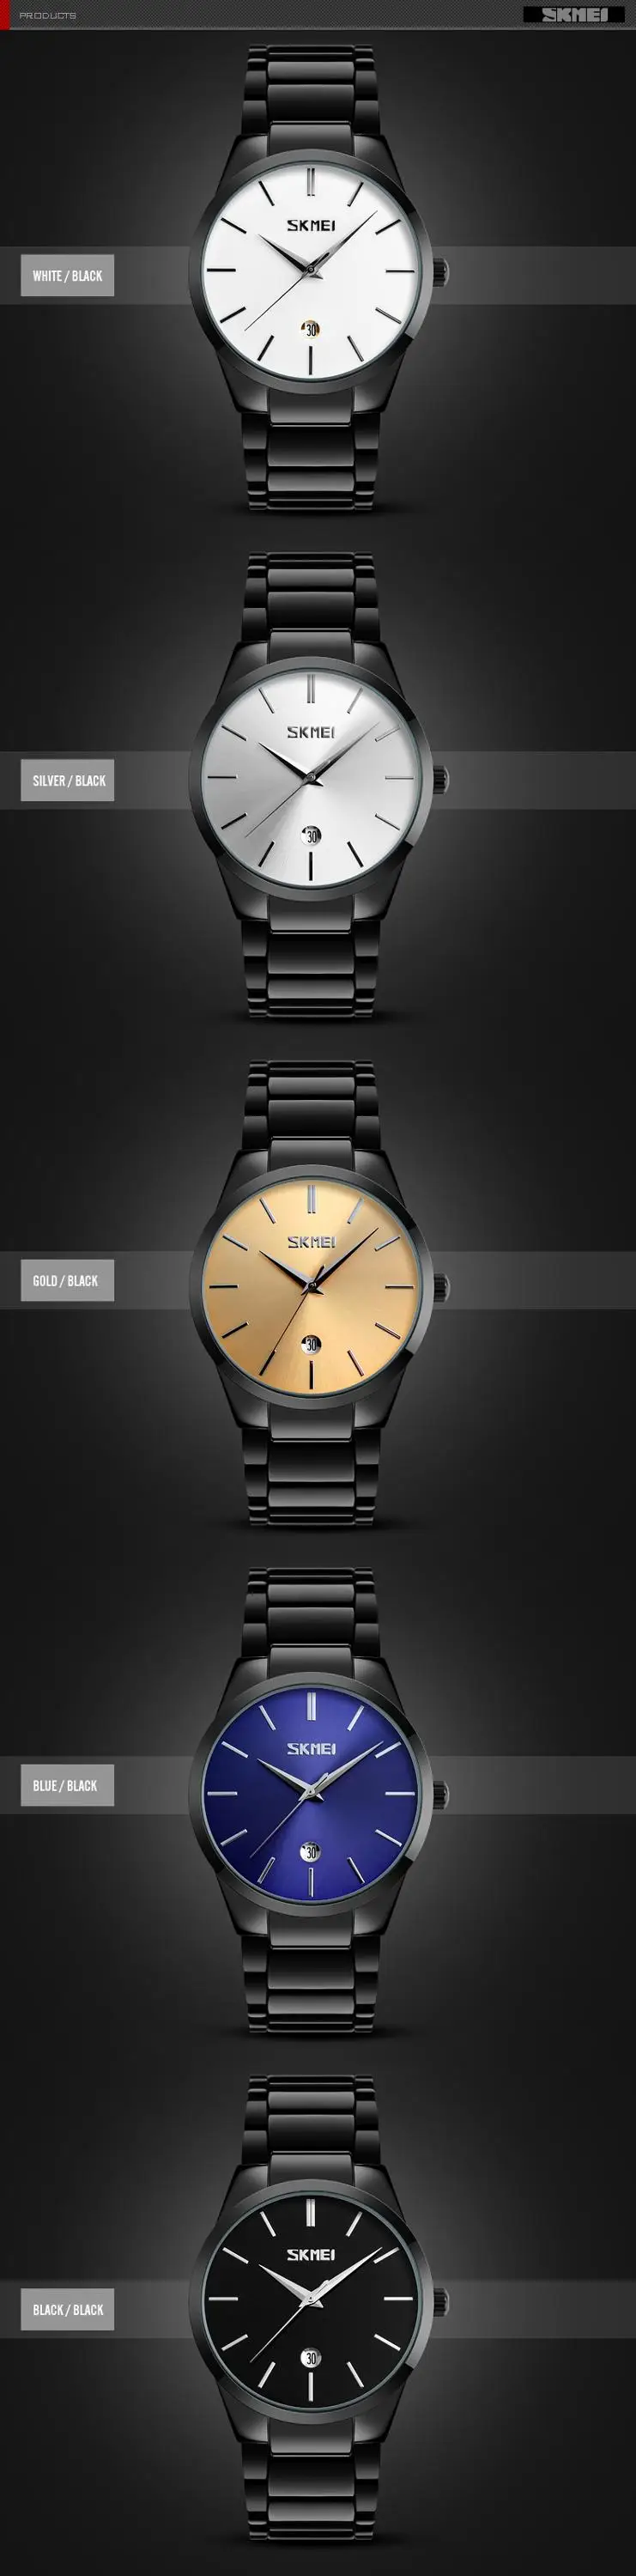 SKMEI 9140 Hot Sale Quartz Brand Watches Japan Movement Stainless Steel Band Wristwatch Men Business Waterproof Calendar Watch